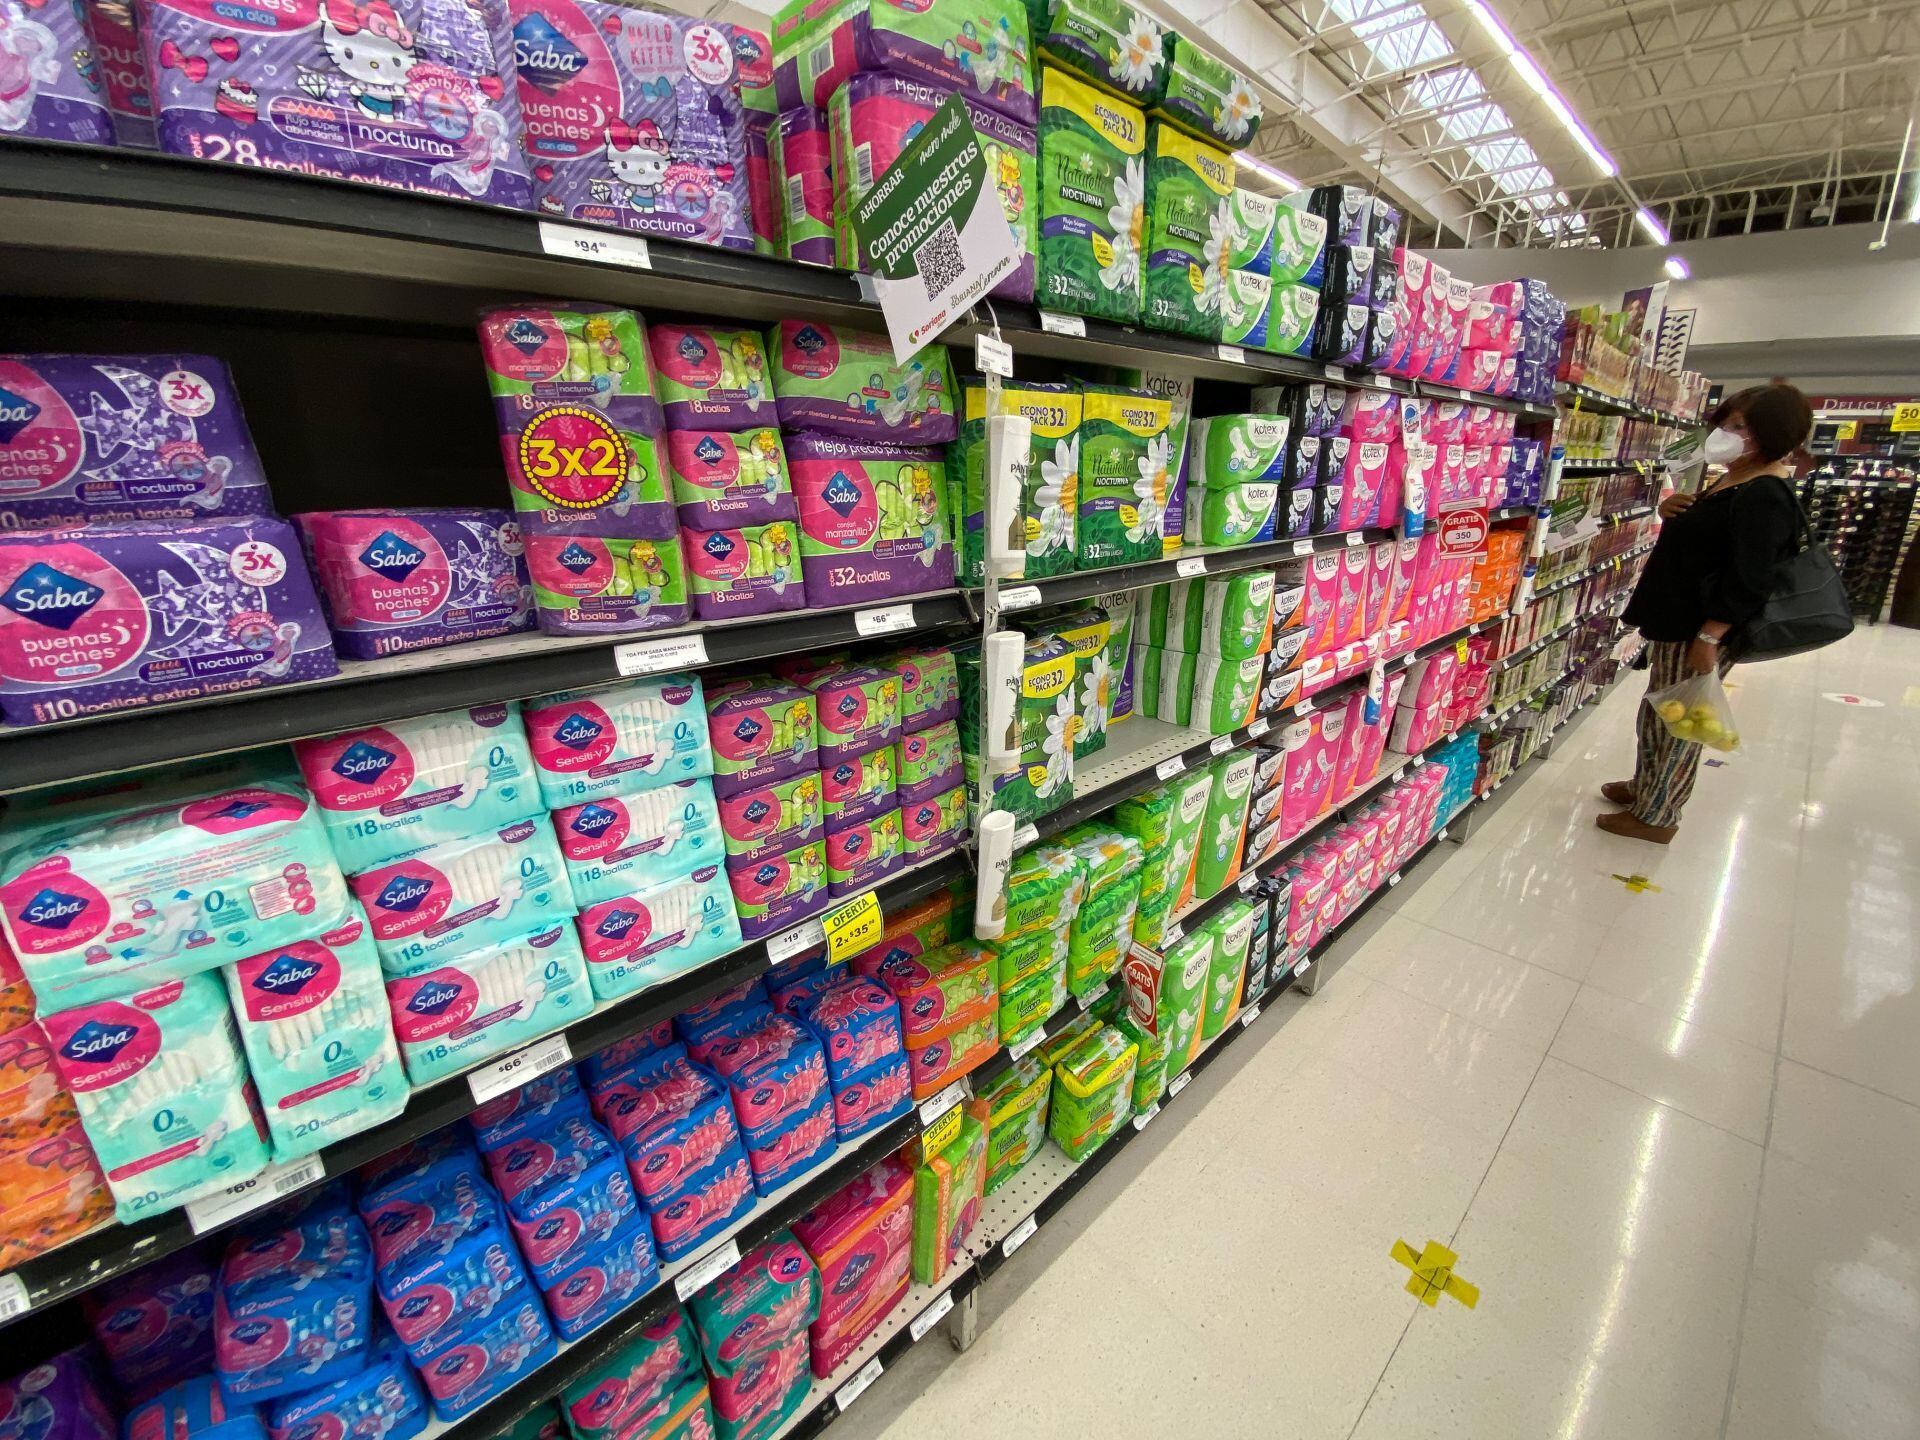 El impuesto rosa encarece artículos de uso femenino como toallas sanitarias, pero también productos más neutros como desodorantes y rastrillos. (Foto: Rogelio Morales/Cuartoscuro)